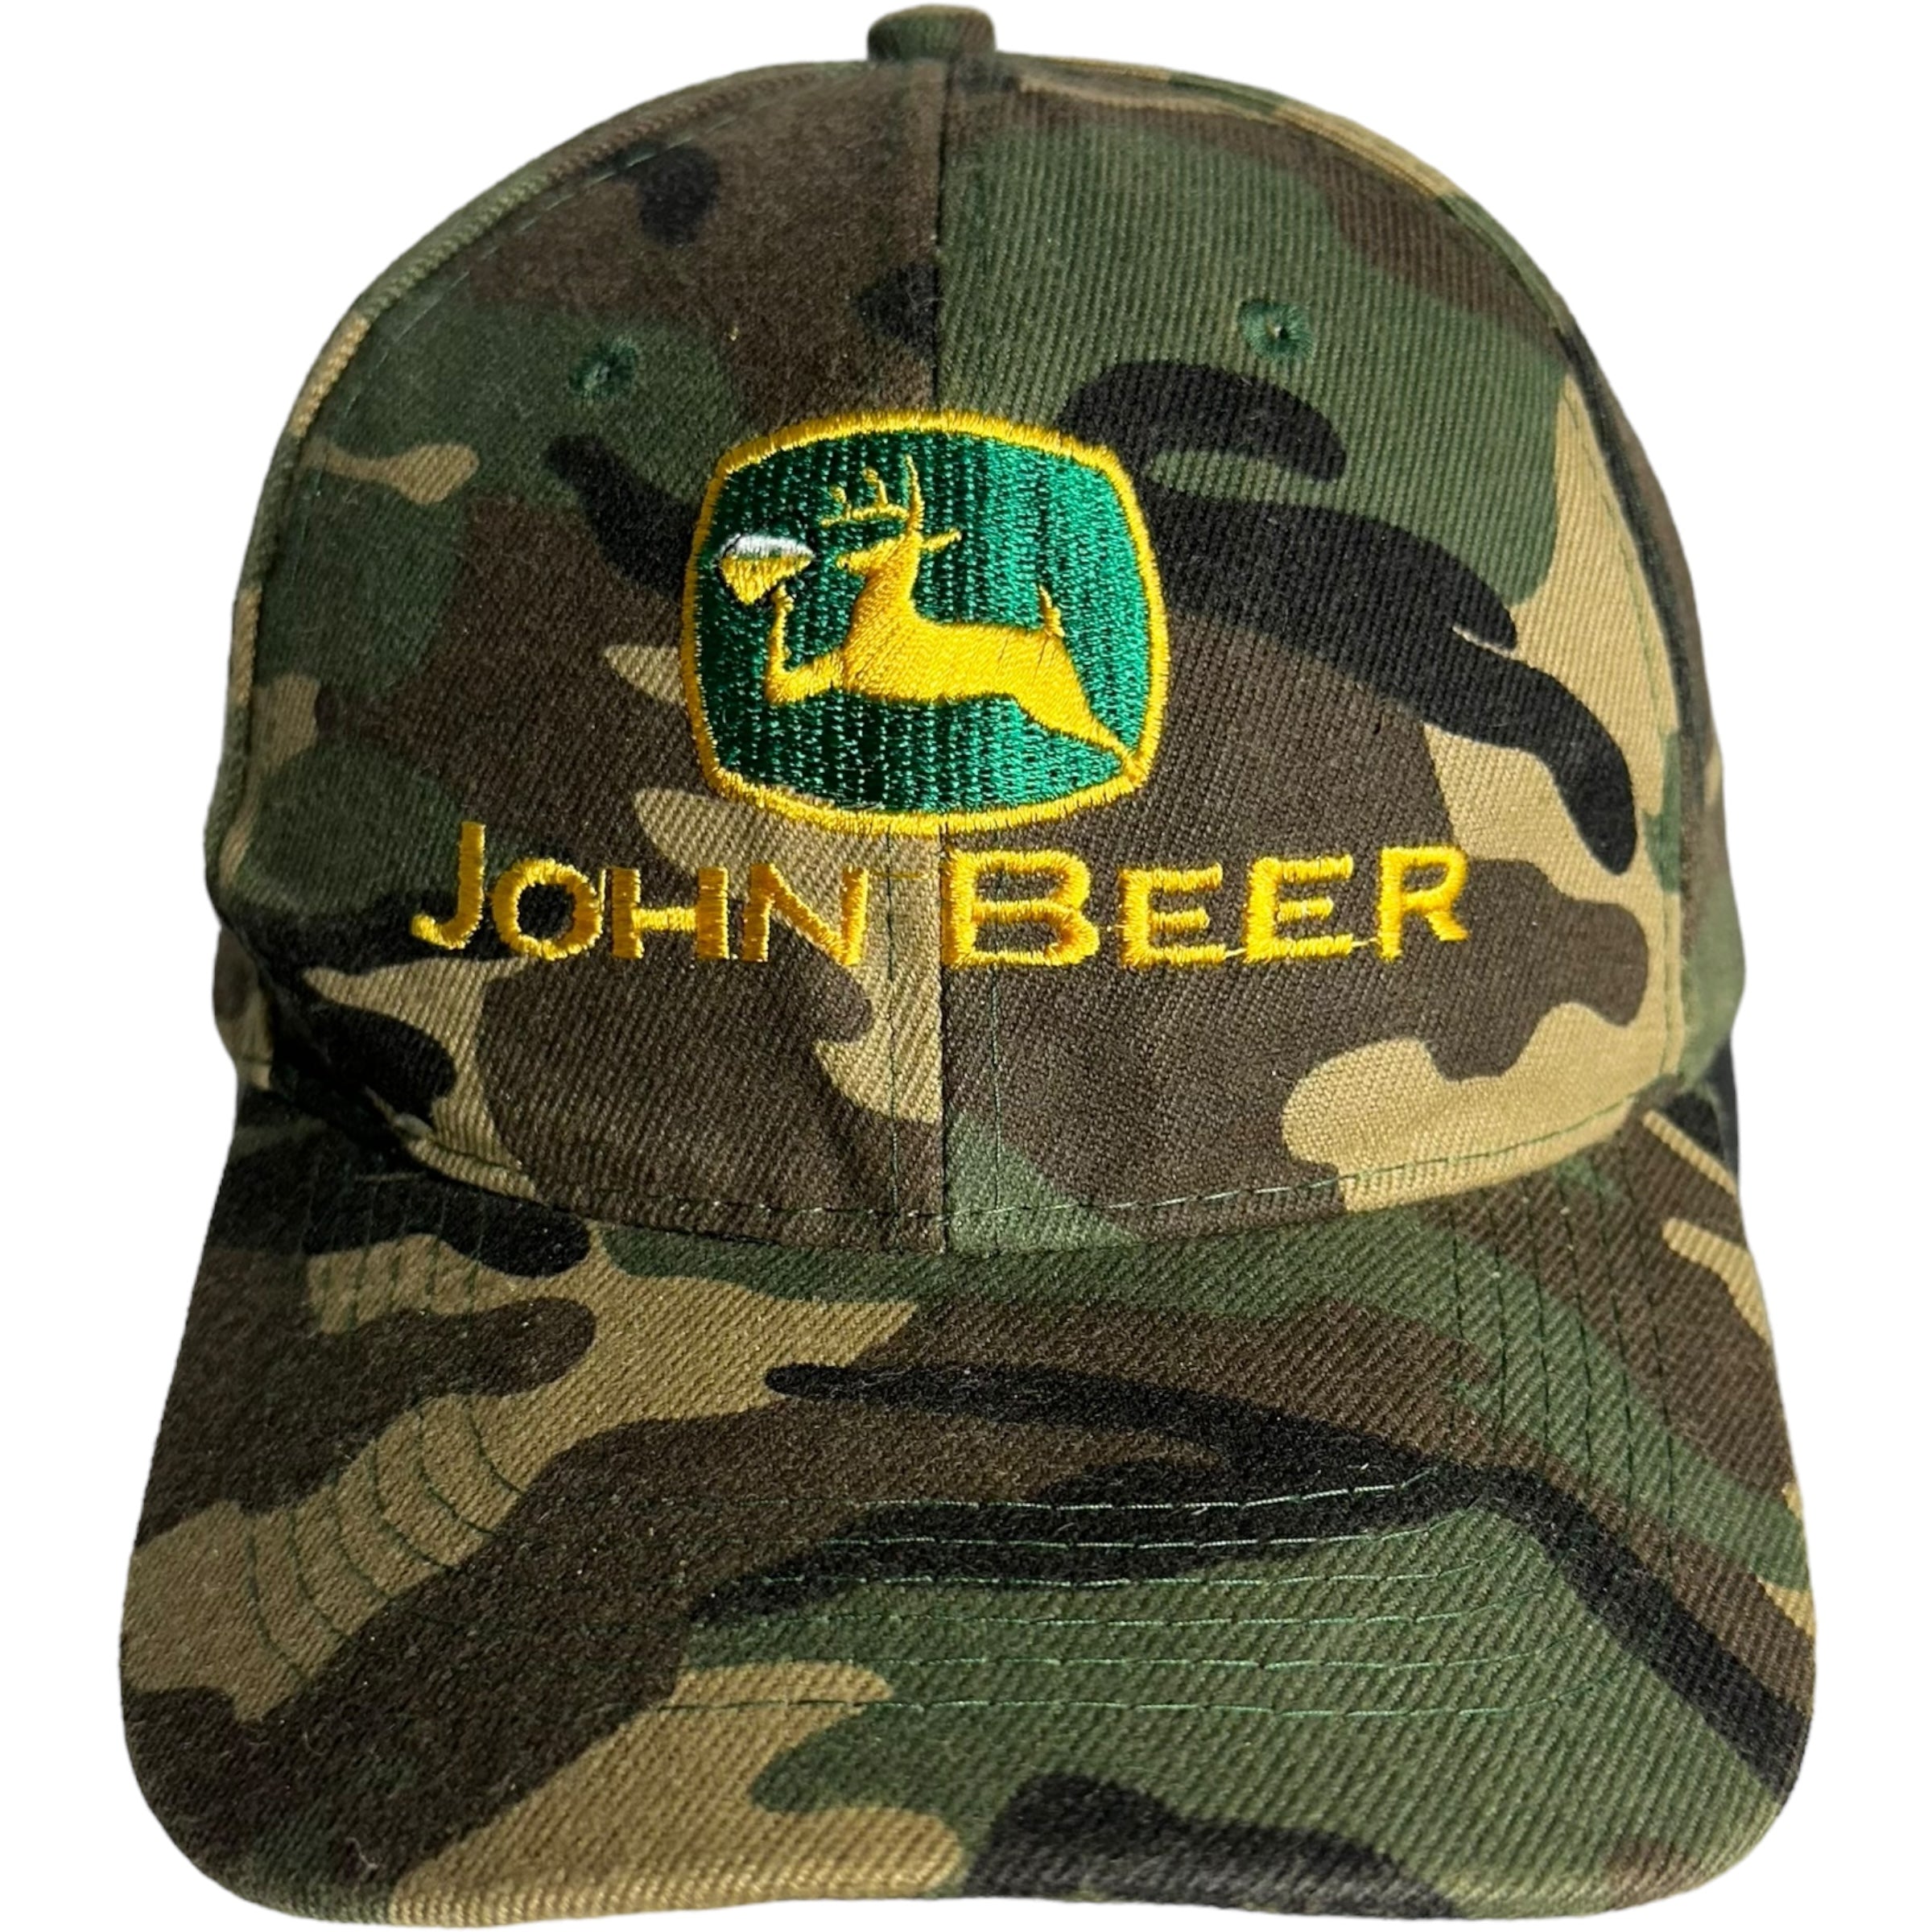 Vintage John Beer Camp Velcro Back Hat